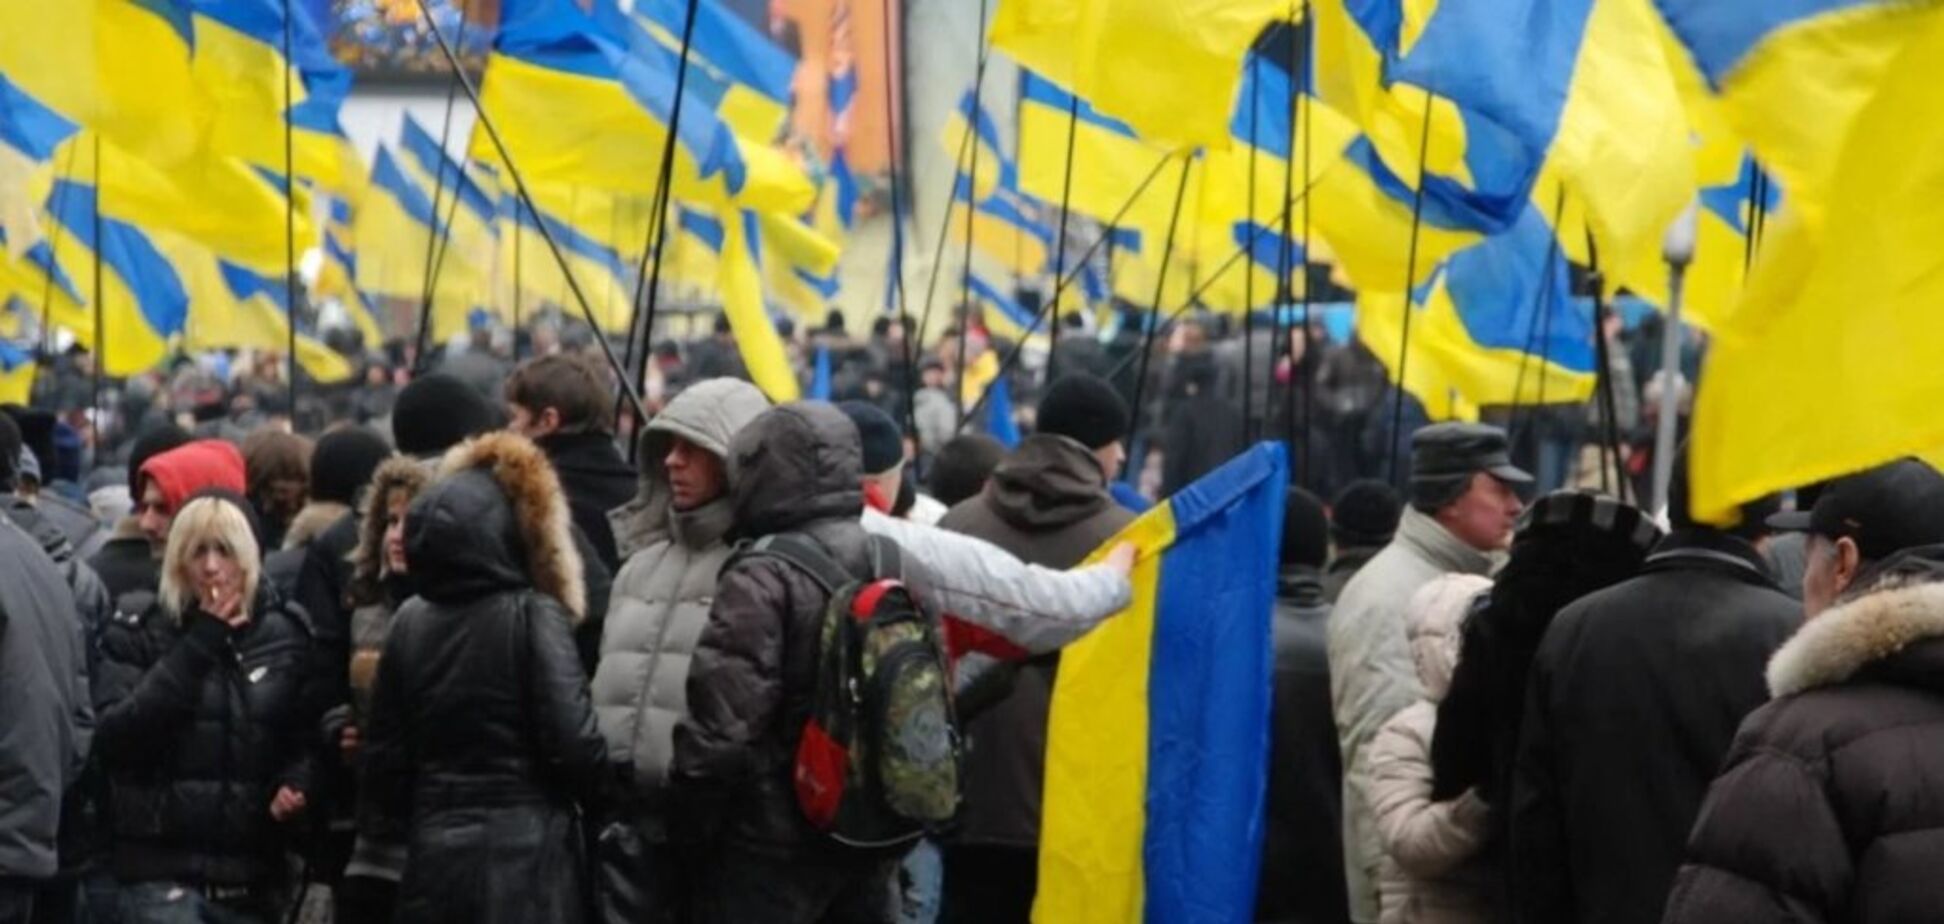 Украинцы резко разочаровались в курсе Зеленского: результаты опроса